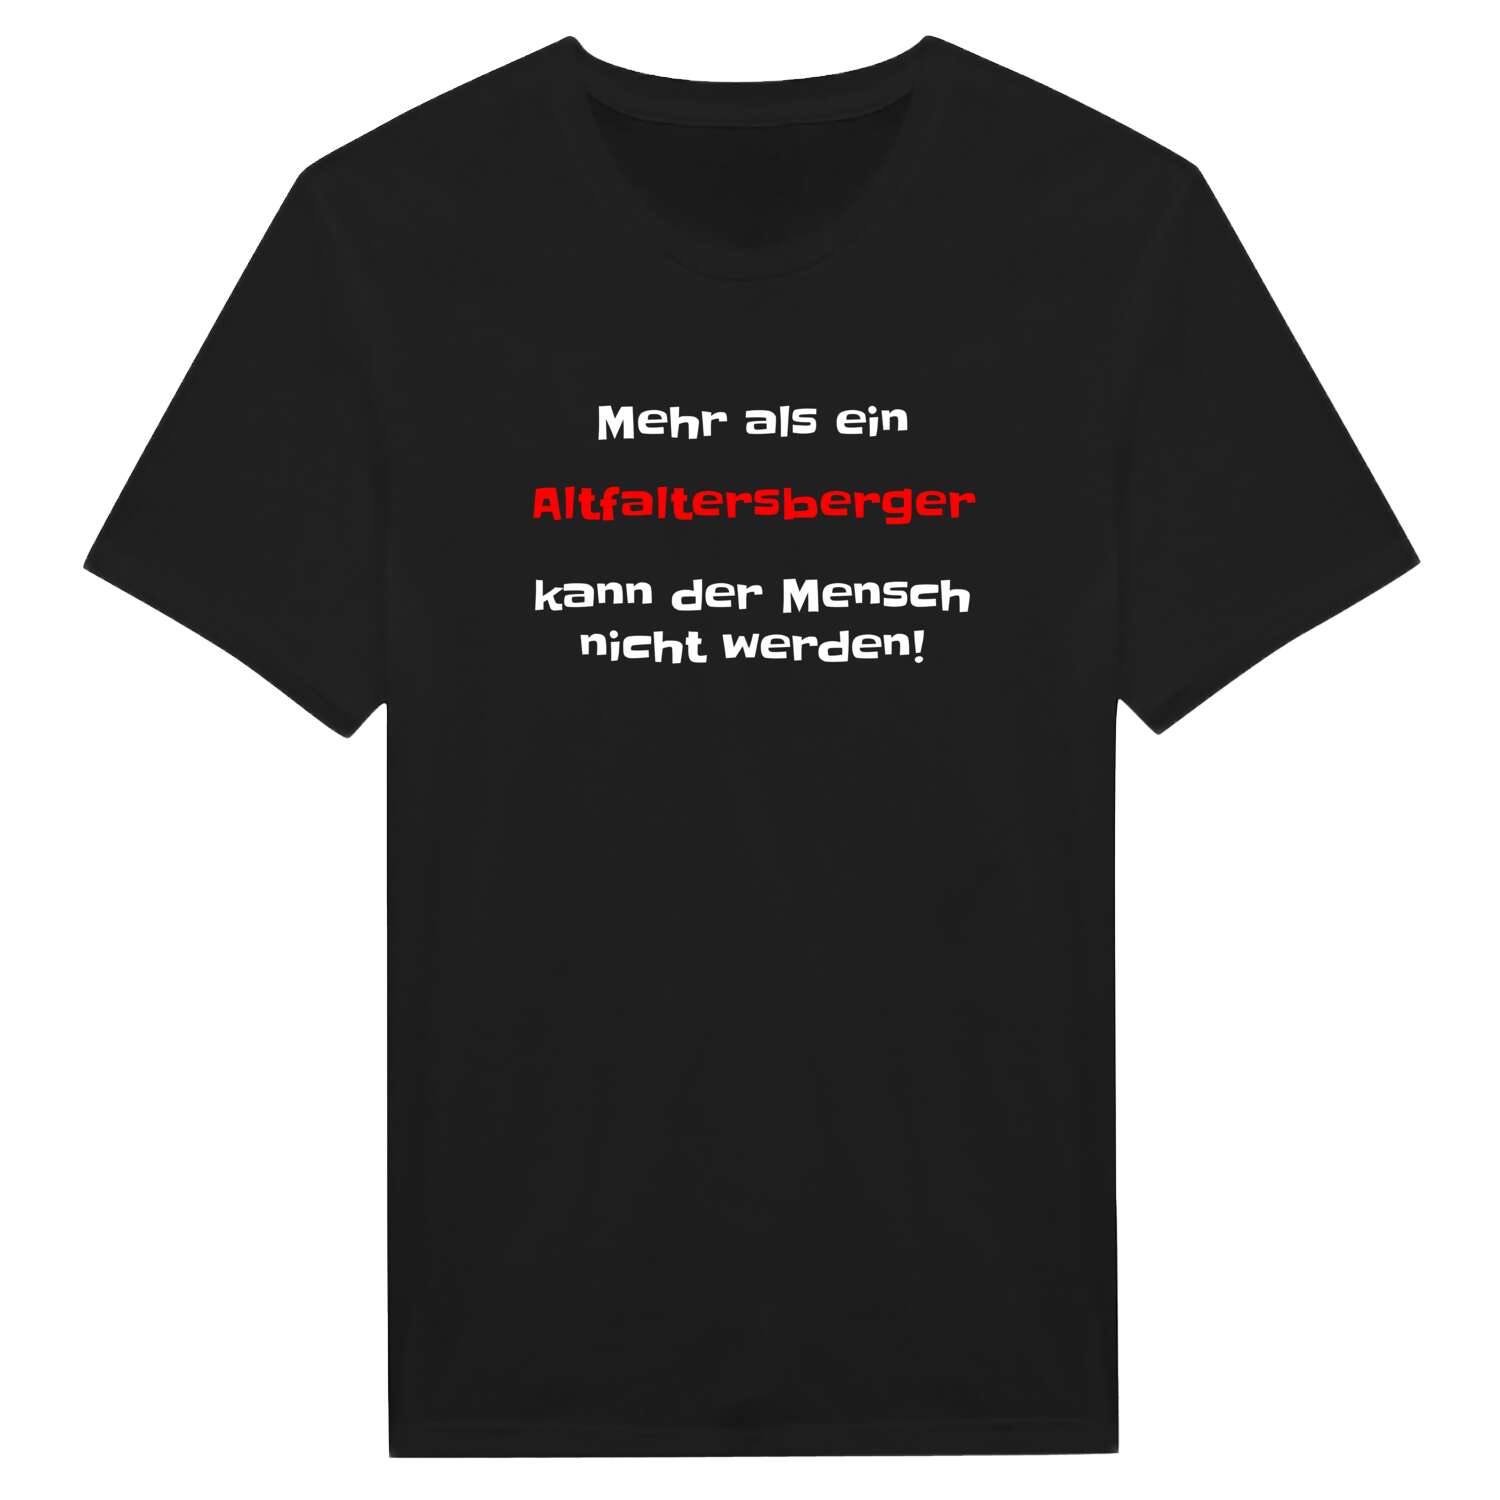 Altfaltersberg T-Shirt »Mehr als ein«